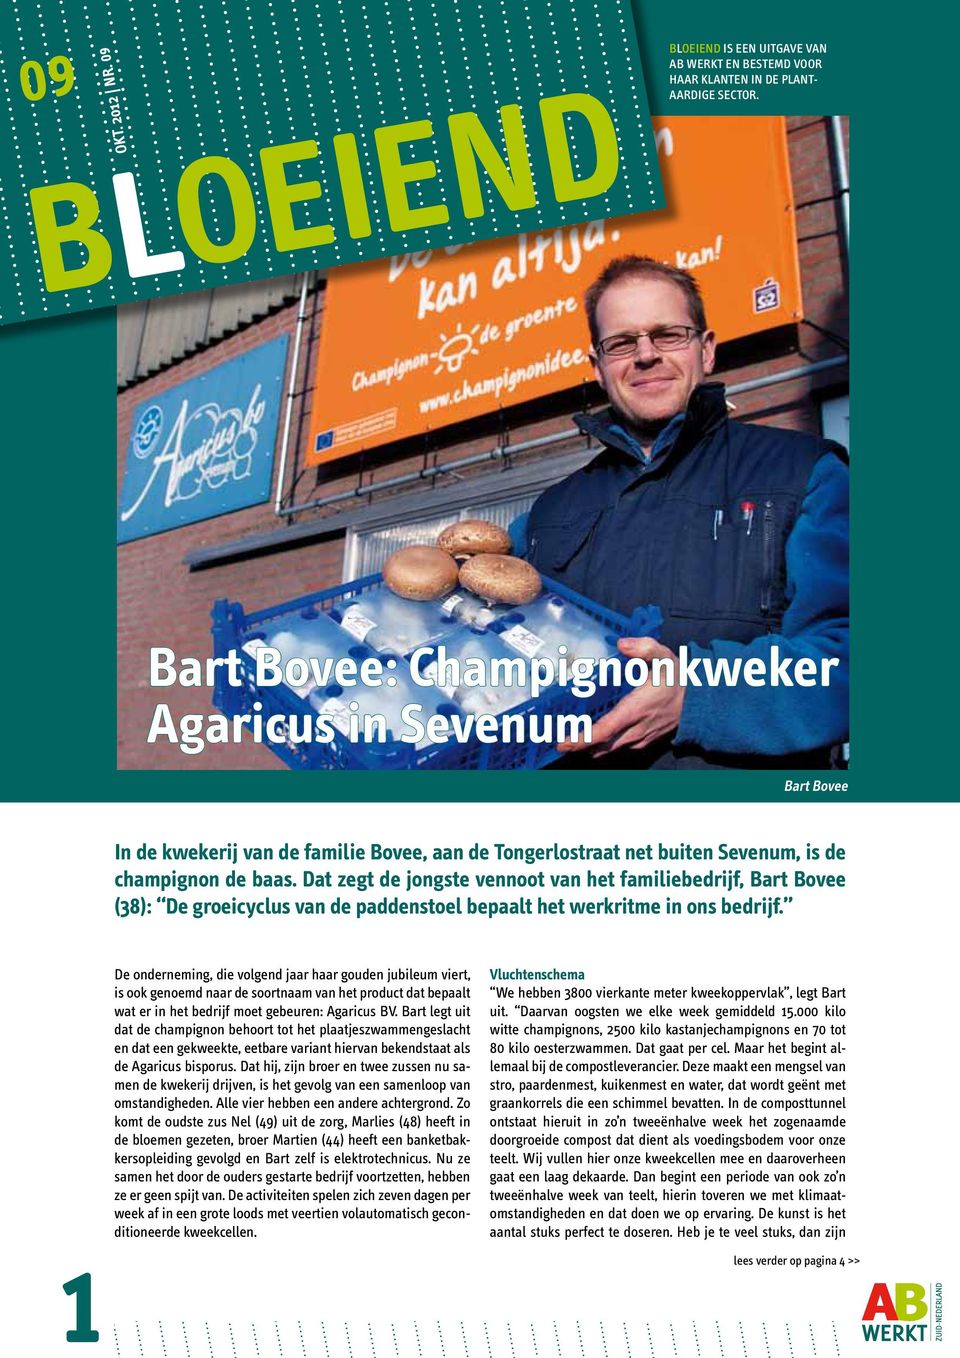 Dat zegt de jongste vennoot van het familiebedrijf, Bart Bovee (38): De groeicyclus van de paddenstoel bepaalt het werkritme in ons bedrijf.